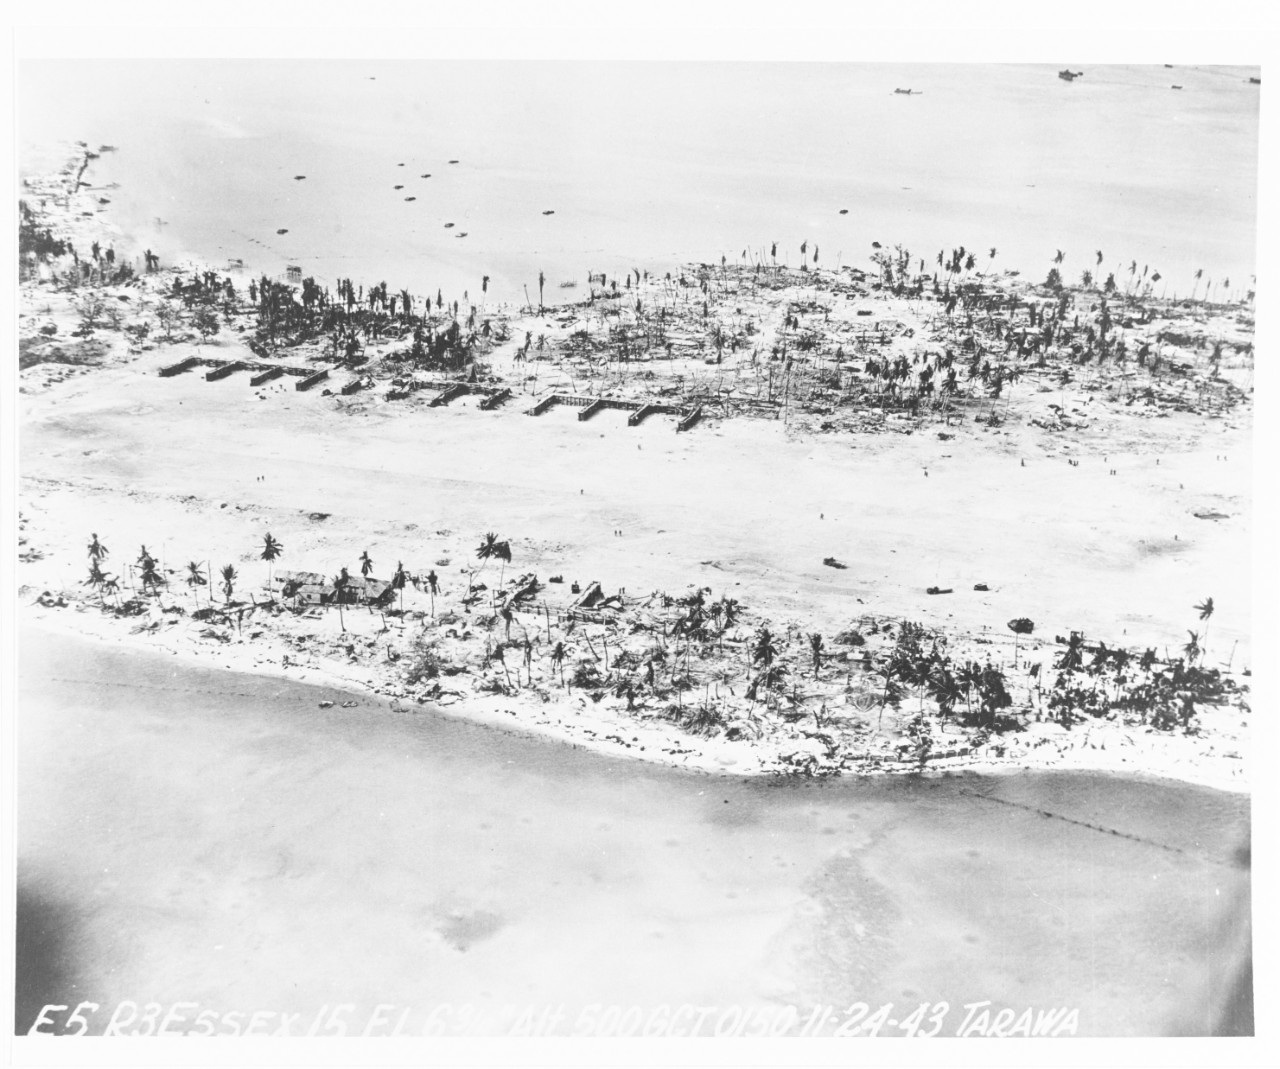 Tarawa Operation, November 1943